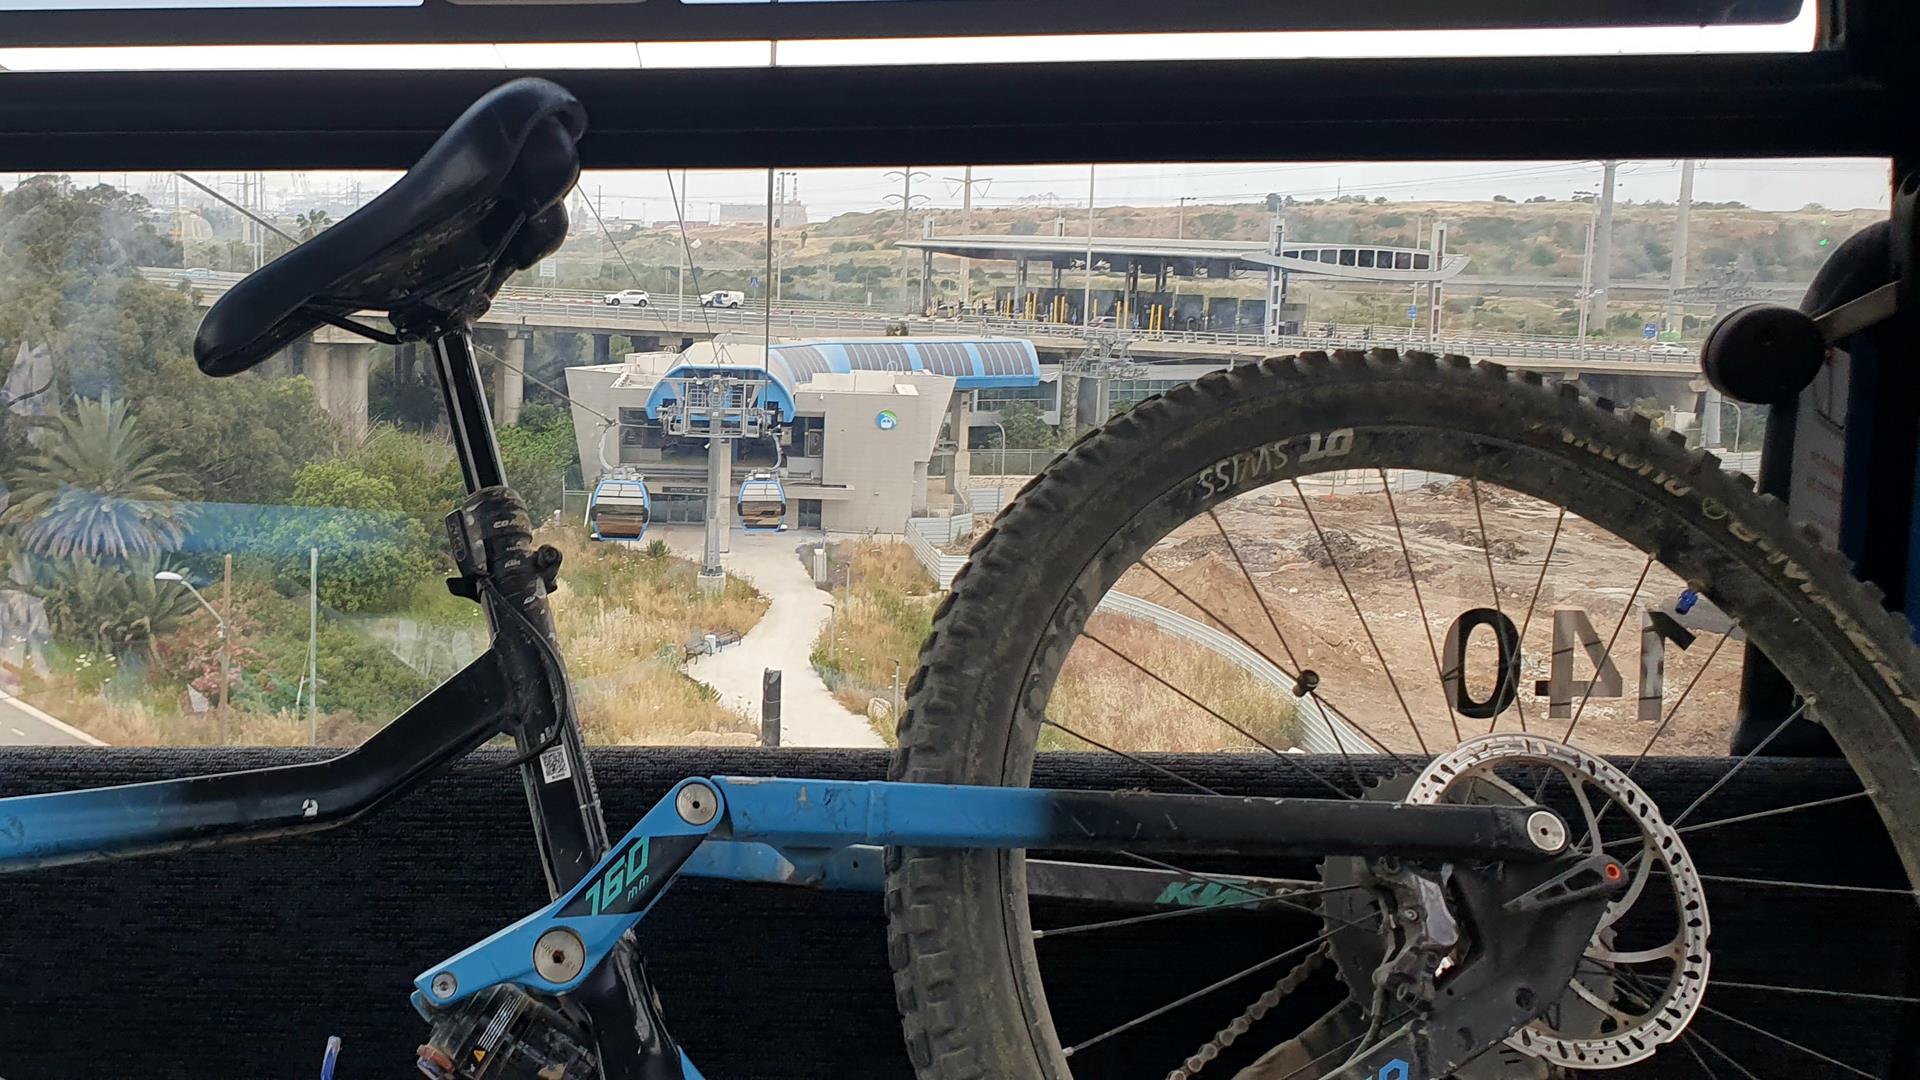 חו"ל בחיפה- מסלולי טיול אופניים על בסיס הרכבלית החדשה בכרמל